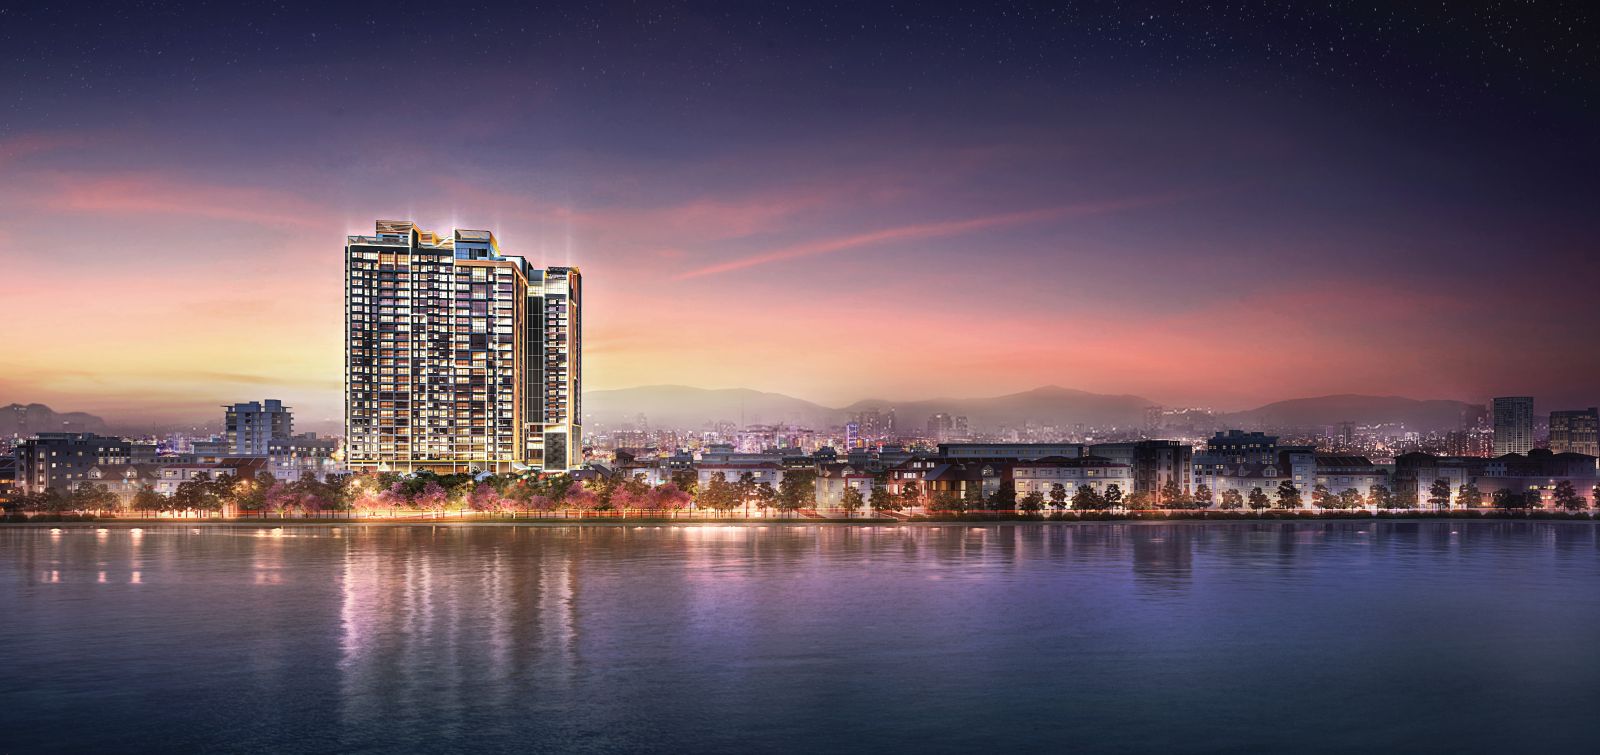 Tọa lạc ngay vị trí đắc địa thuộc quận Tây Hồ, Heritage West Lake là dự án nhà ở cao cấp đầu tiên của CLD tại Hà Nội với 173 căn hộ sang trọng.